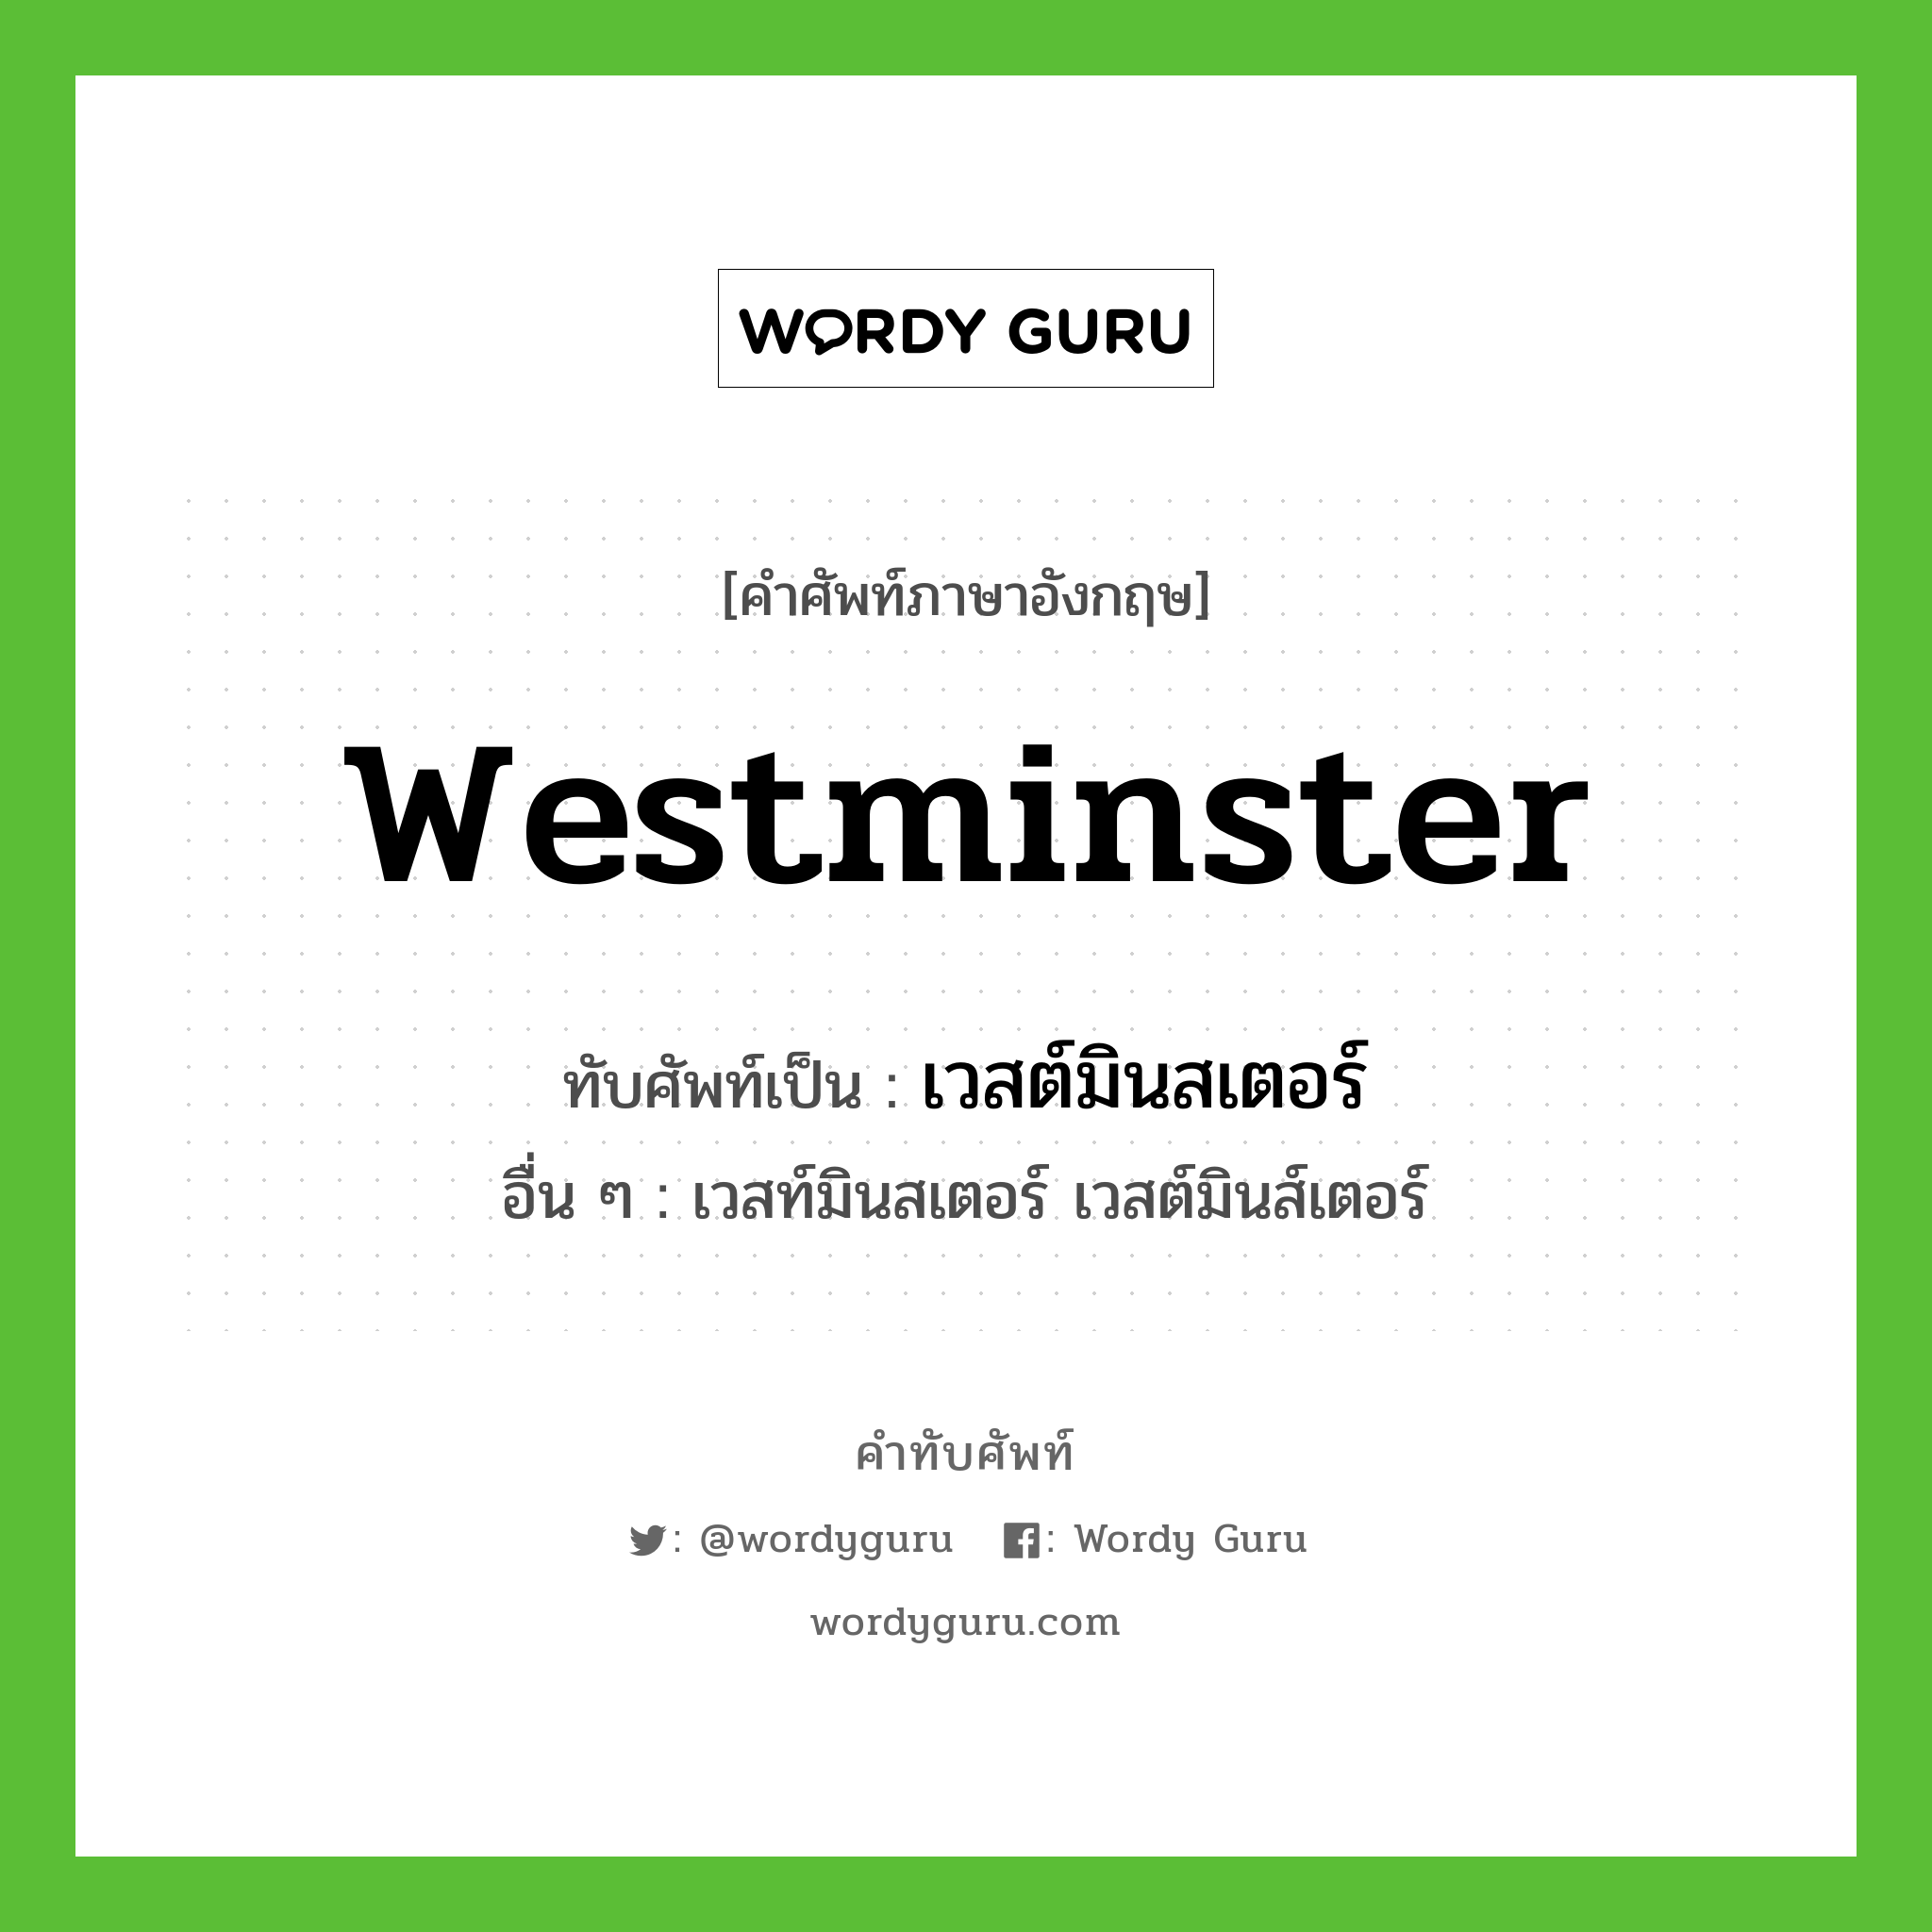 Westminster เขียนเป็นคำไทยว่าอะไร?, คำศัพท์ภาษาอังกฤษ Westminster ทับศัพท์เป็น เวสต์มินสเตอร์ อื่น ๆ เวสท์มินสเตอร์ เวสต์มินส์เตอร์